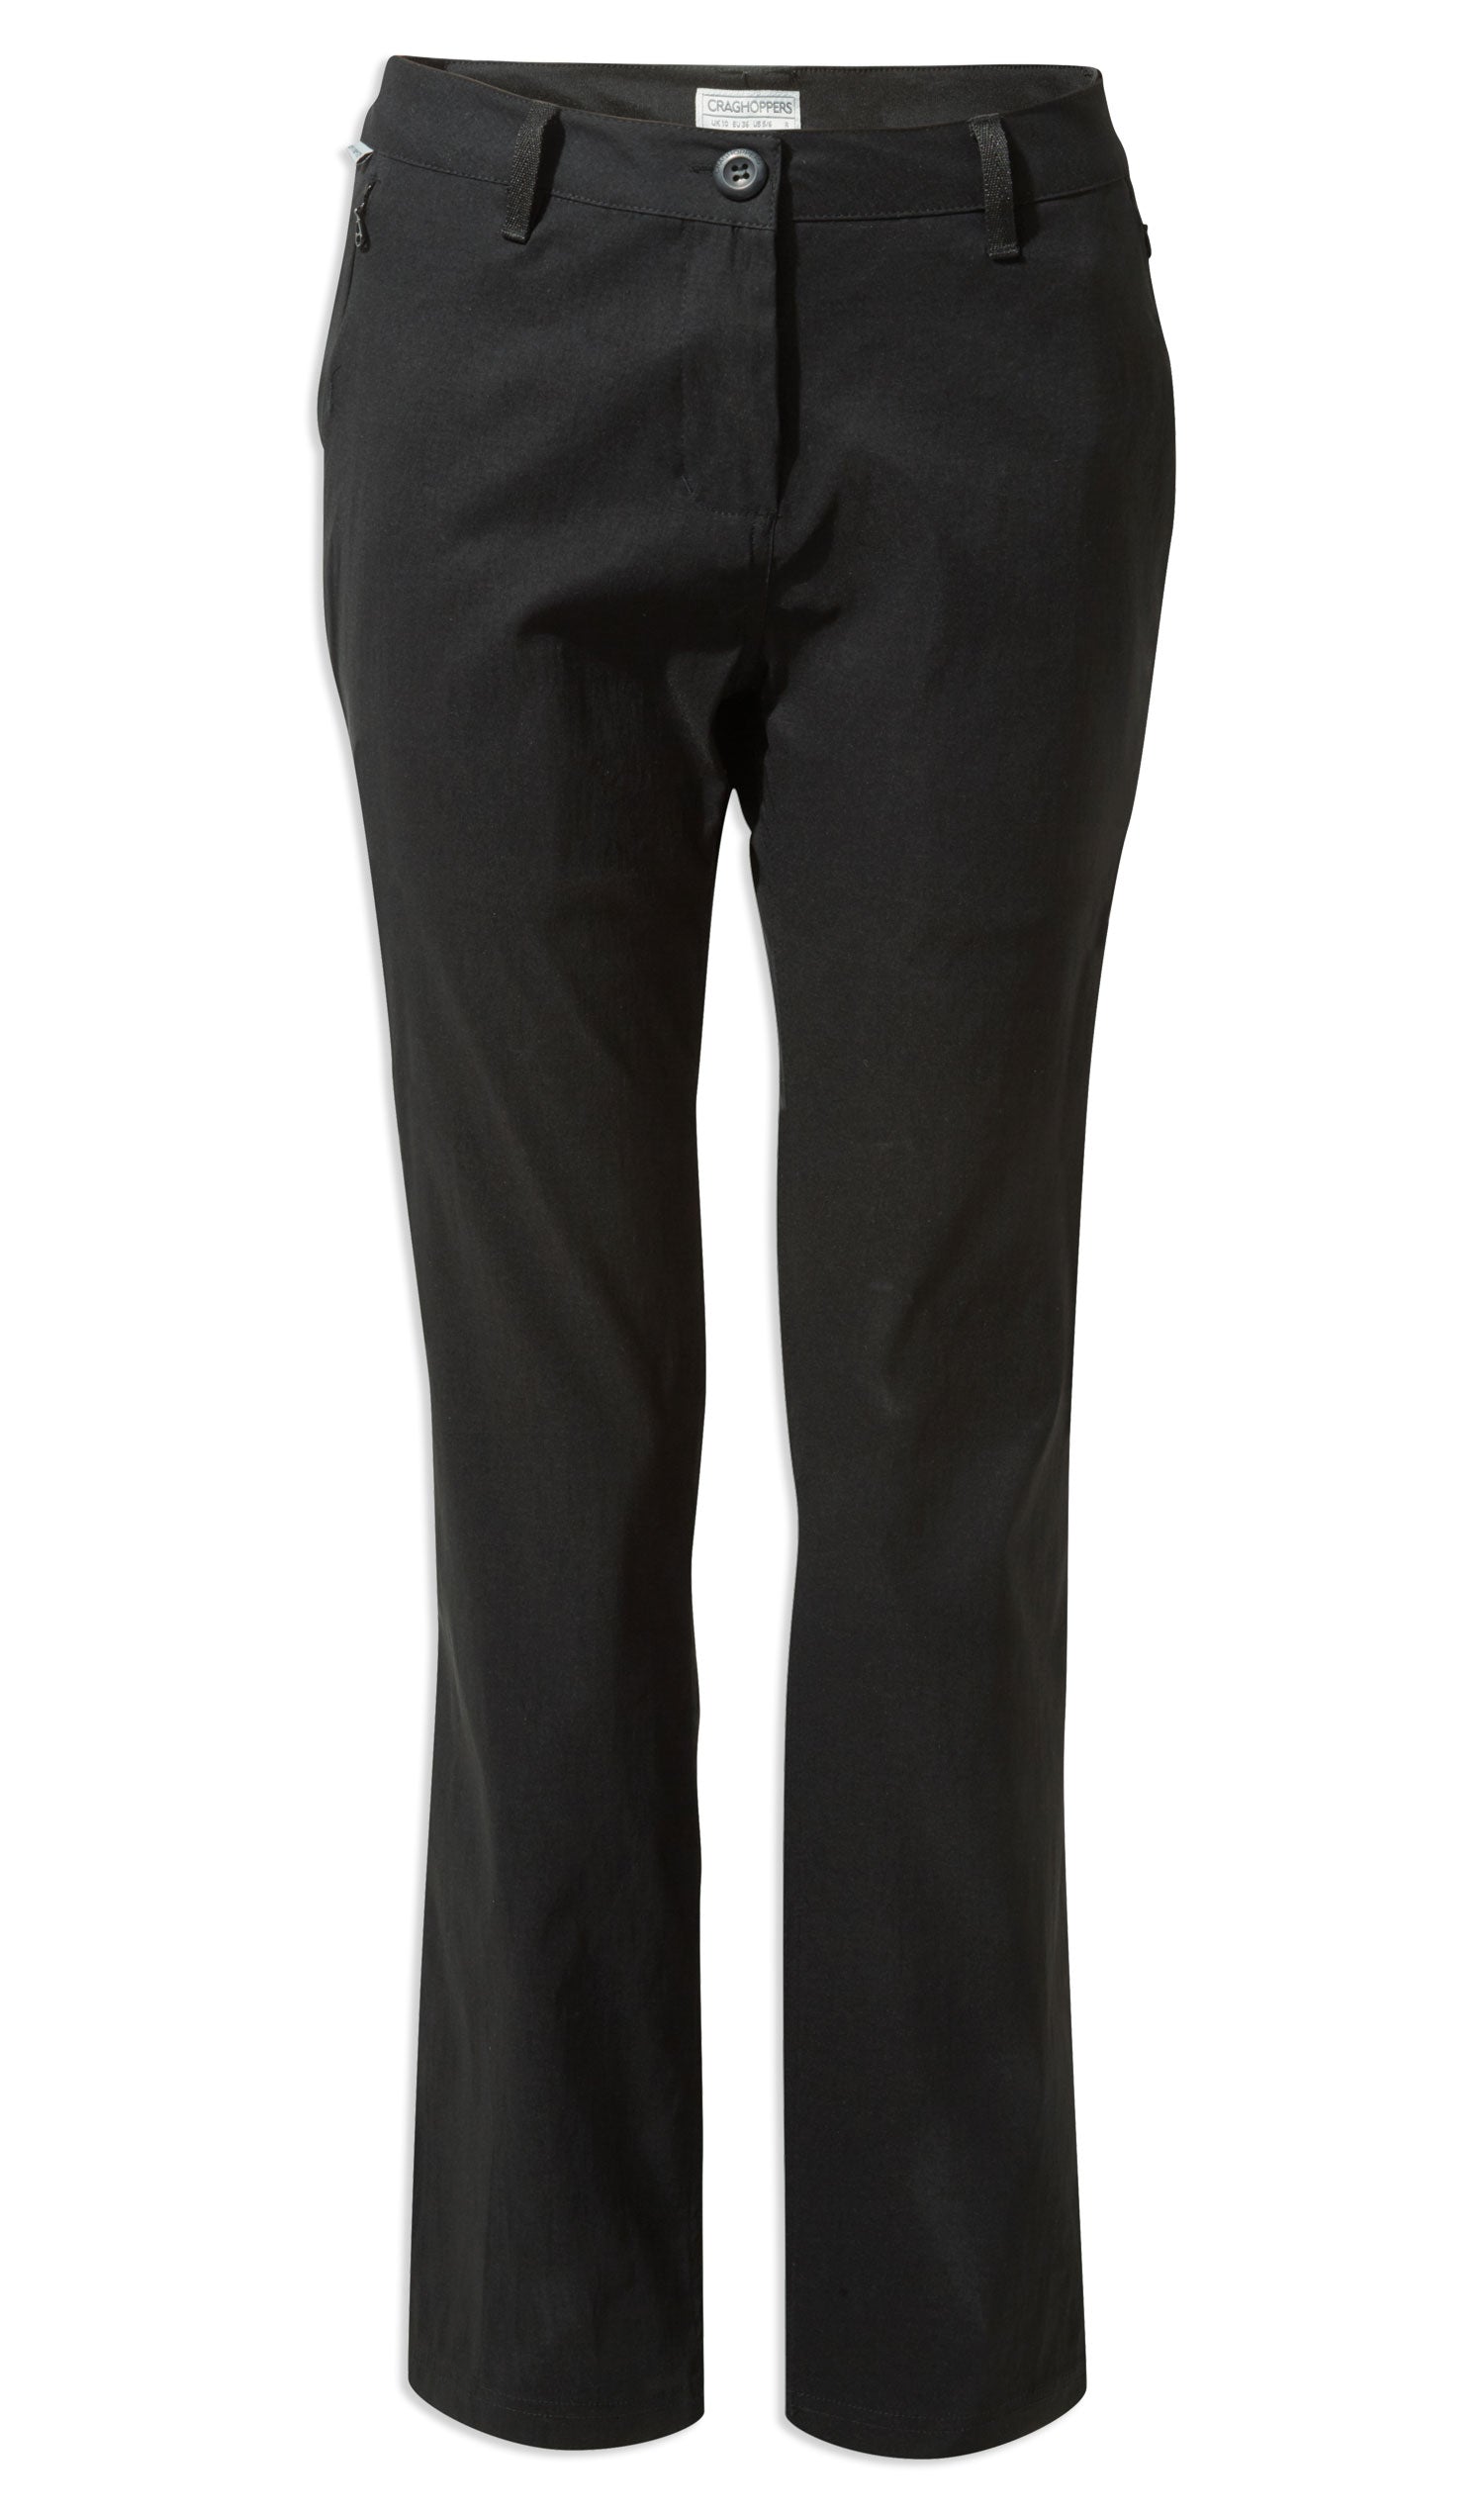  Craghoppers Kiwi Pro II Ladies Trousers in Black